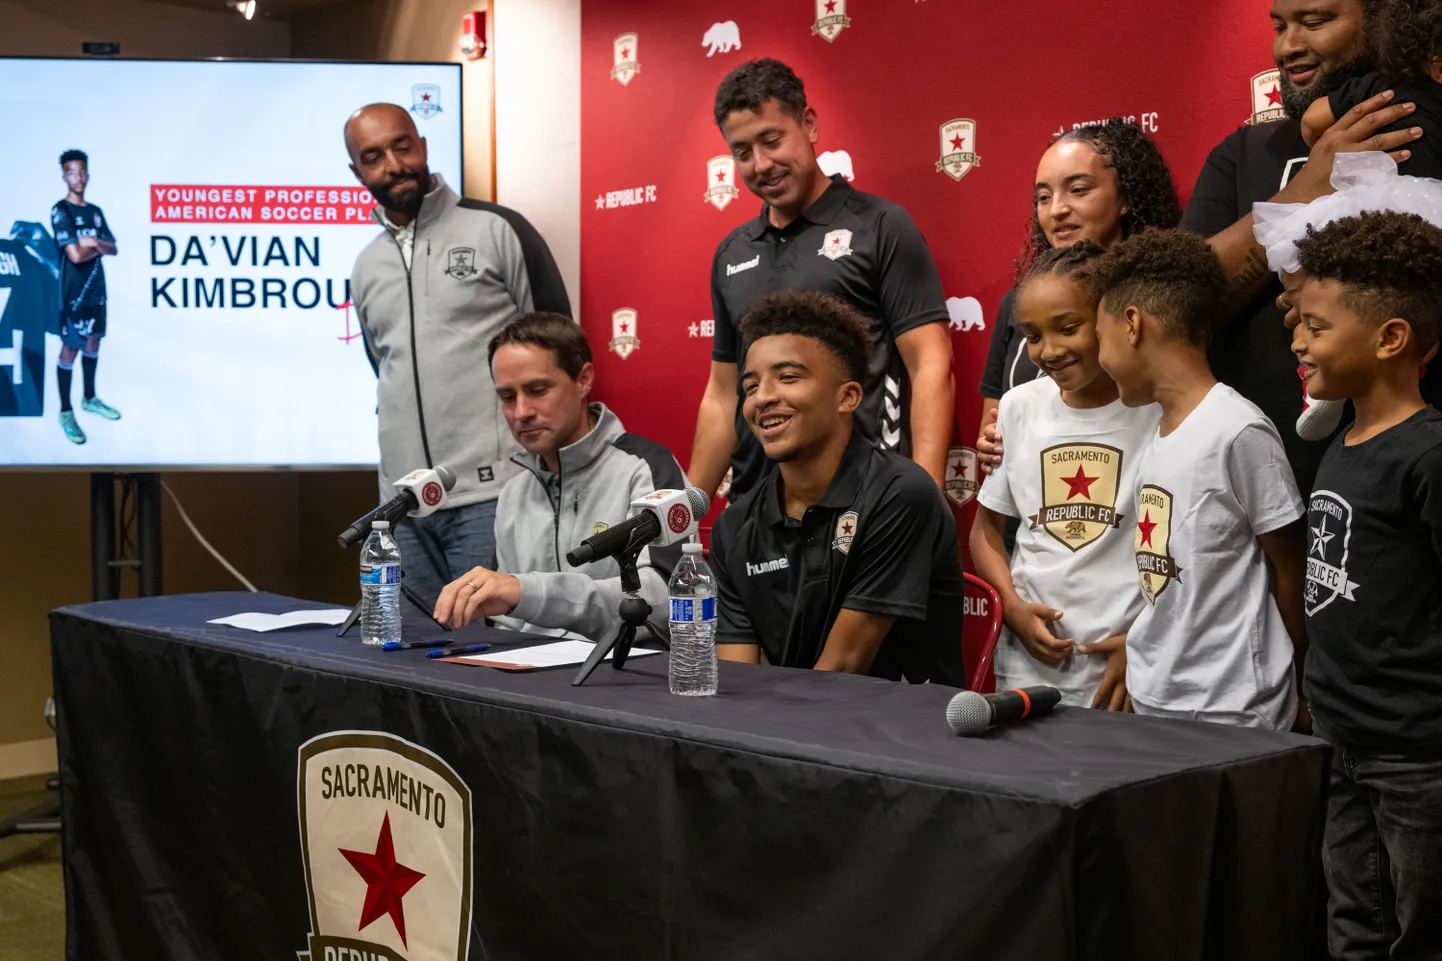 Da'vian Kimbrough (istub keskel) koos perekonna ja Sacramento jalgpalliklubi esindajatega allkirjastamas profilepingut.